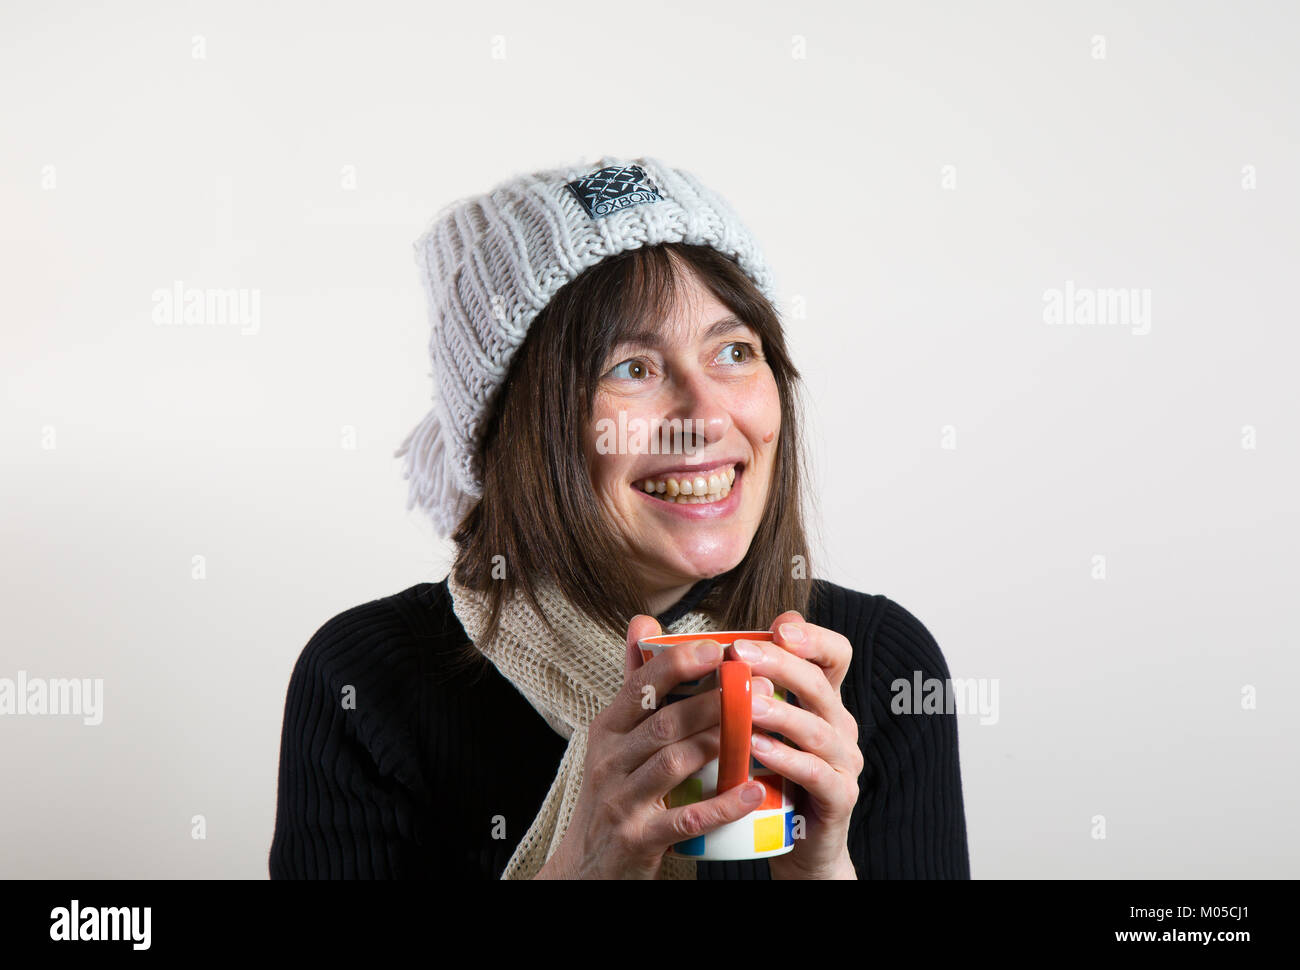 À l'intérieur portrait : happy female, vue avant, dans beanie bobble hat, tenant une tasse, un réchauffement de la main. Elle lève les yeux avec de grands sourire, sourire de fromage excité. Banque D'Images